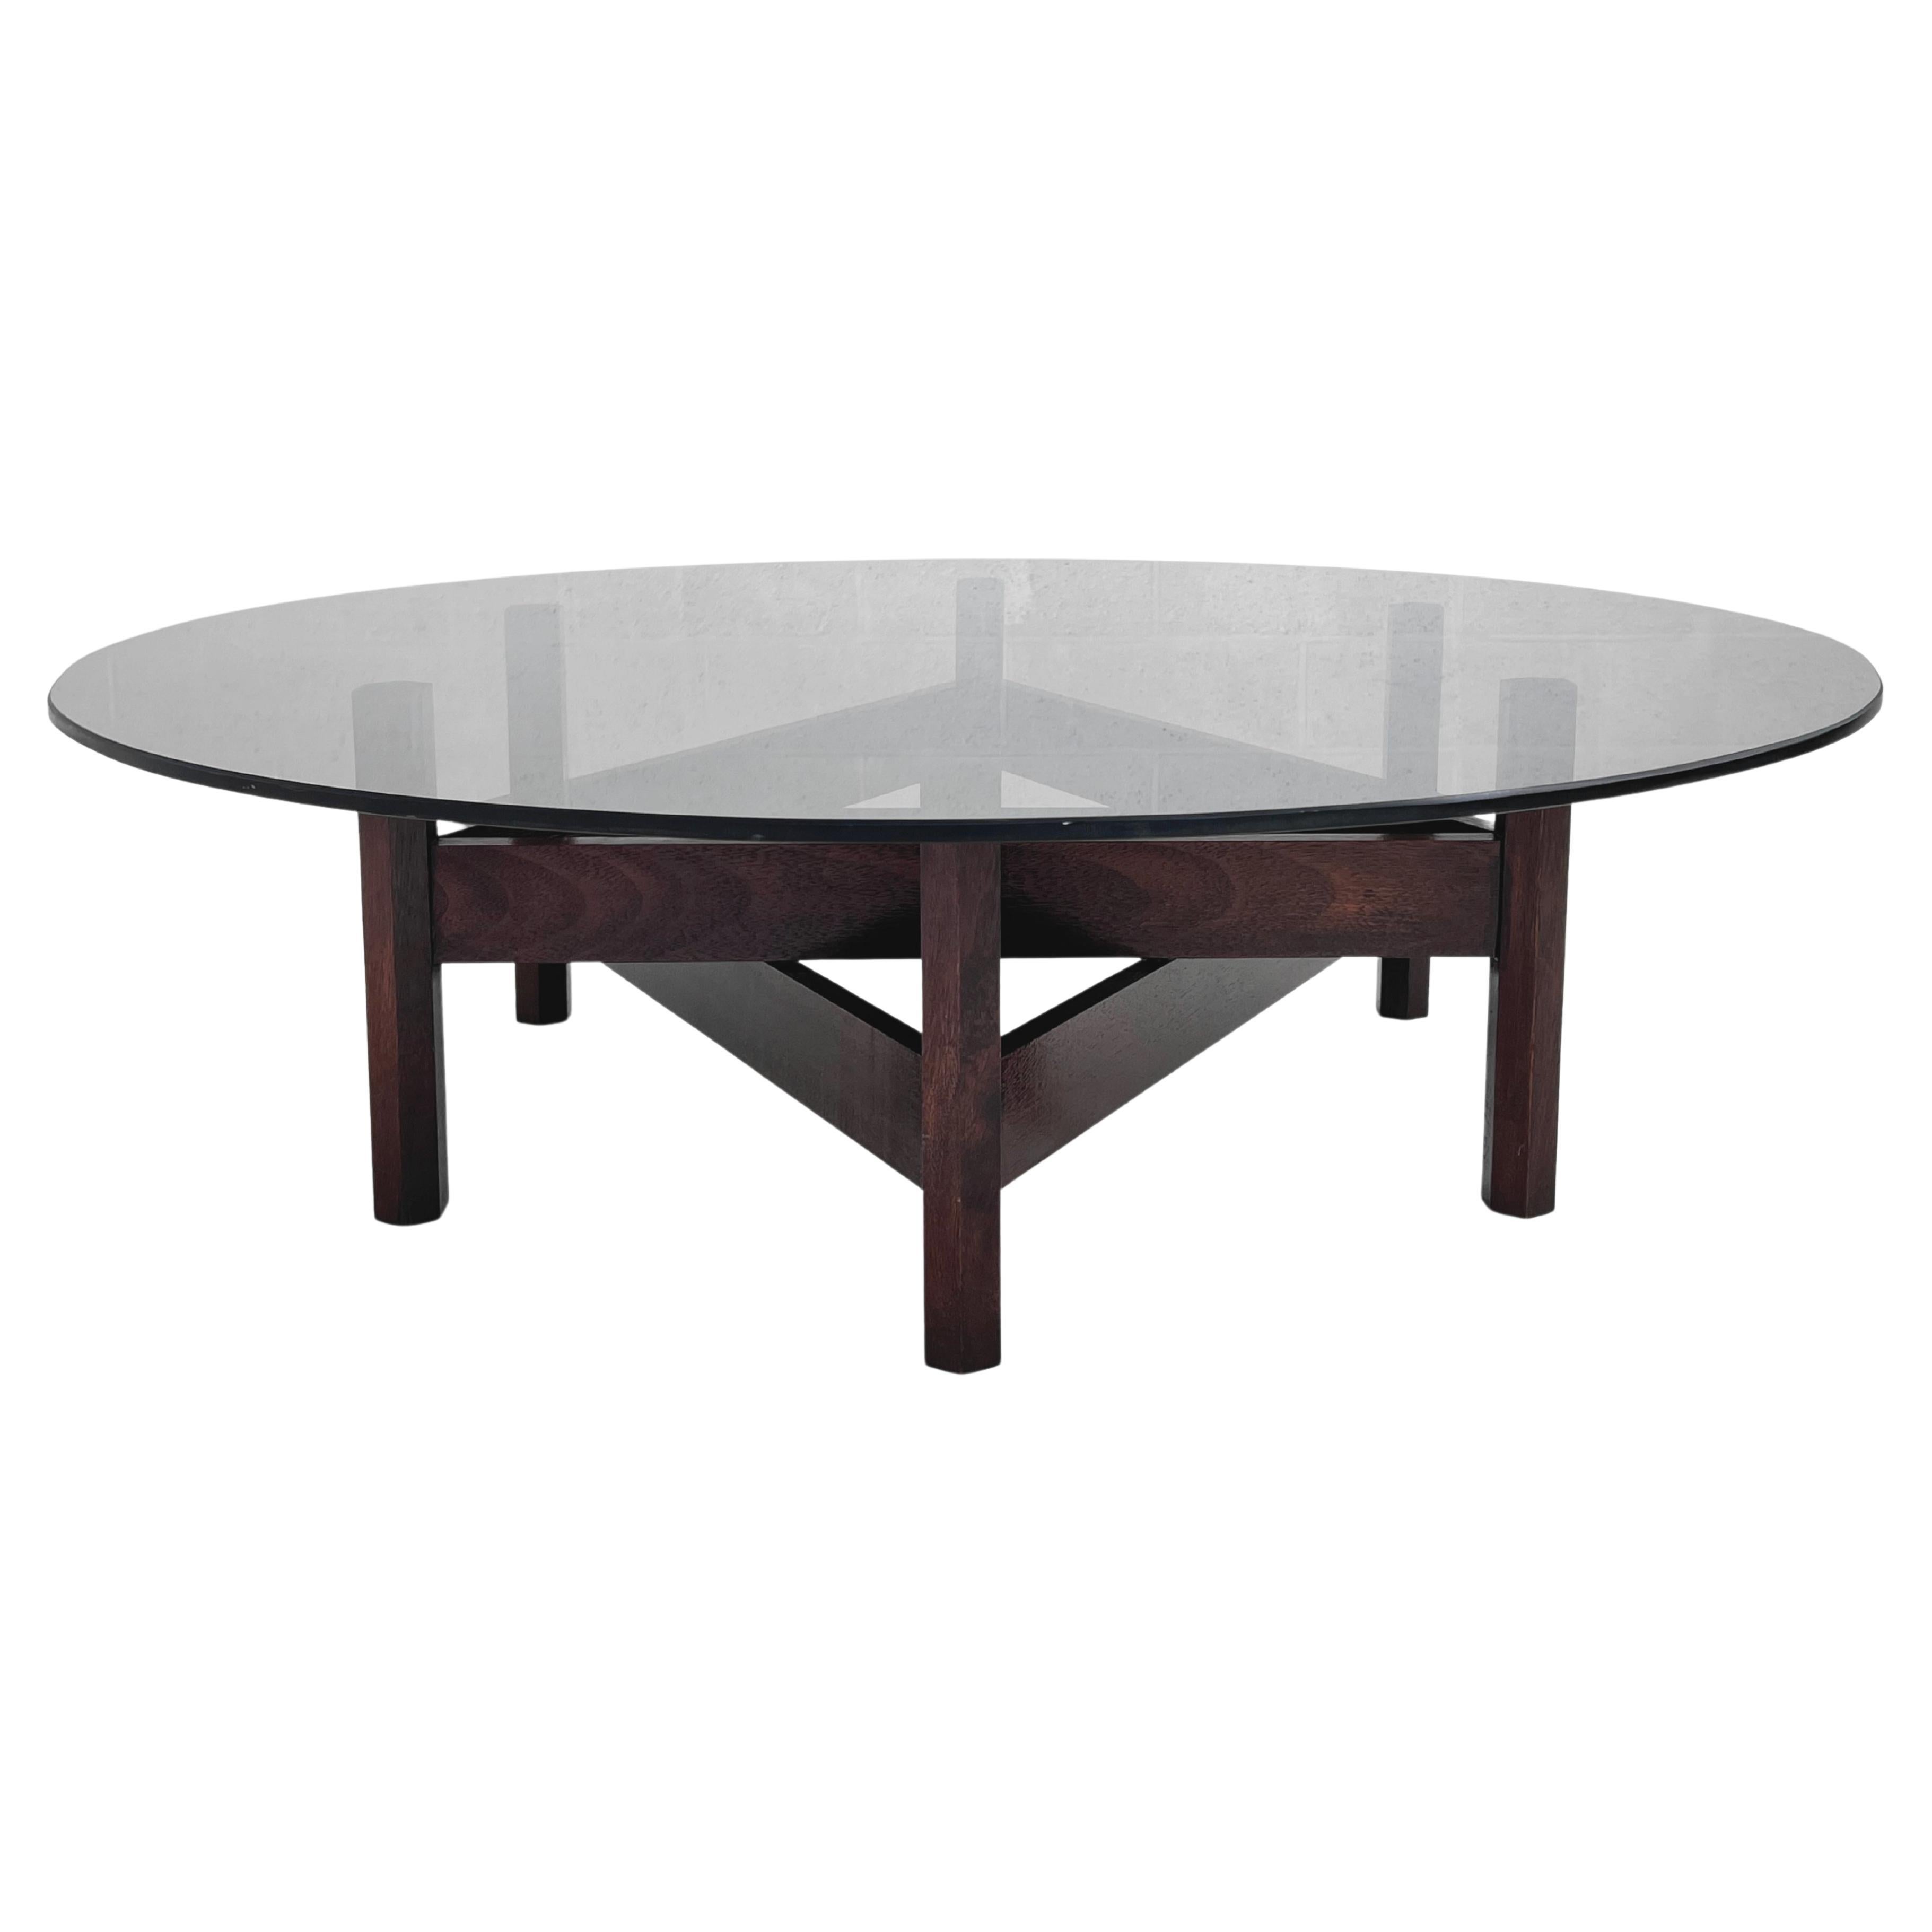 Table basse ronde à plateau en verre et base en bois en forme d'étoile, design MCM